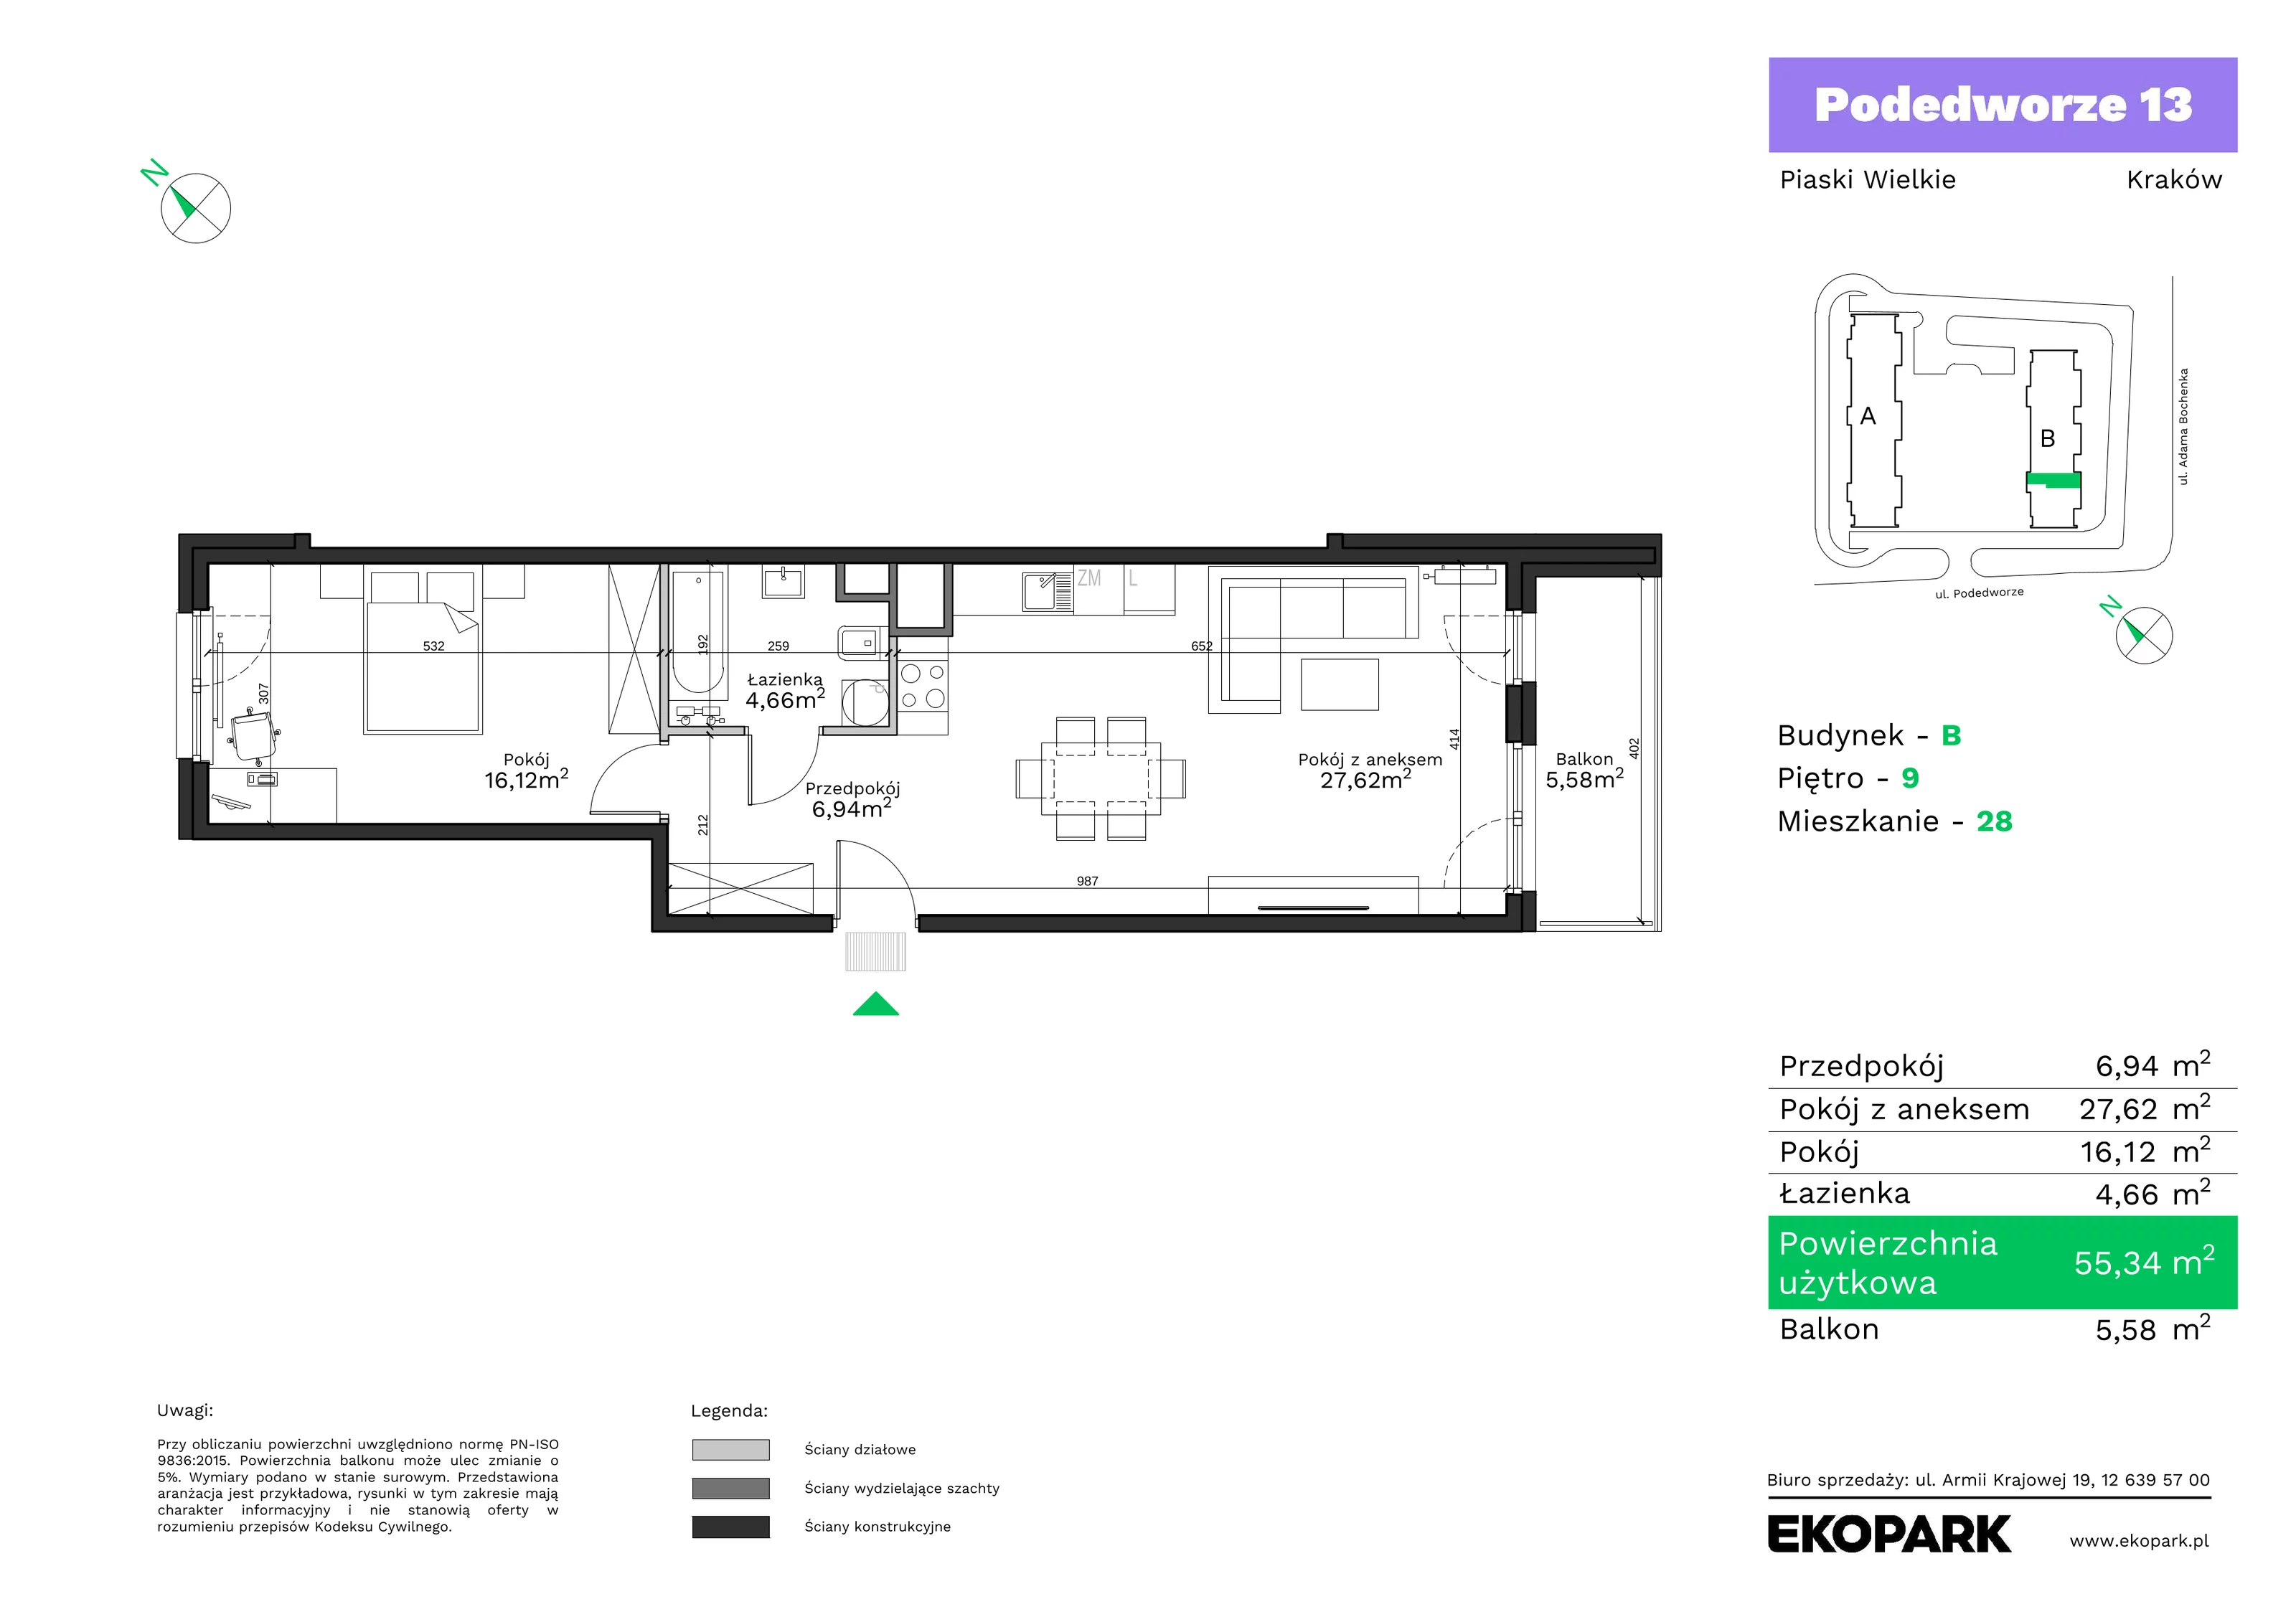 Mieszkanie 55,34 m², piętro 9, oferta nr B28, Podedworze 13, Kraków, Podgórze Duchackie, Piaski Wielkie, ul. Podedworze 13